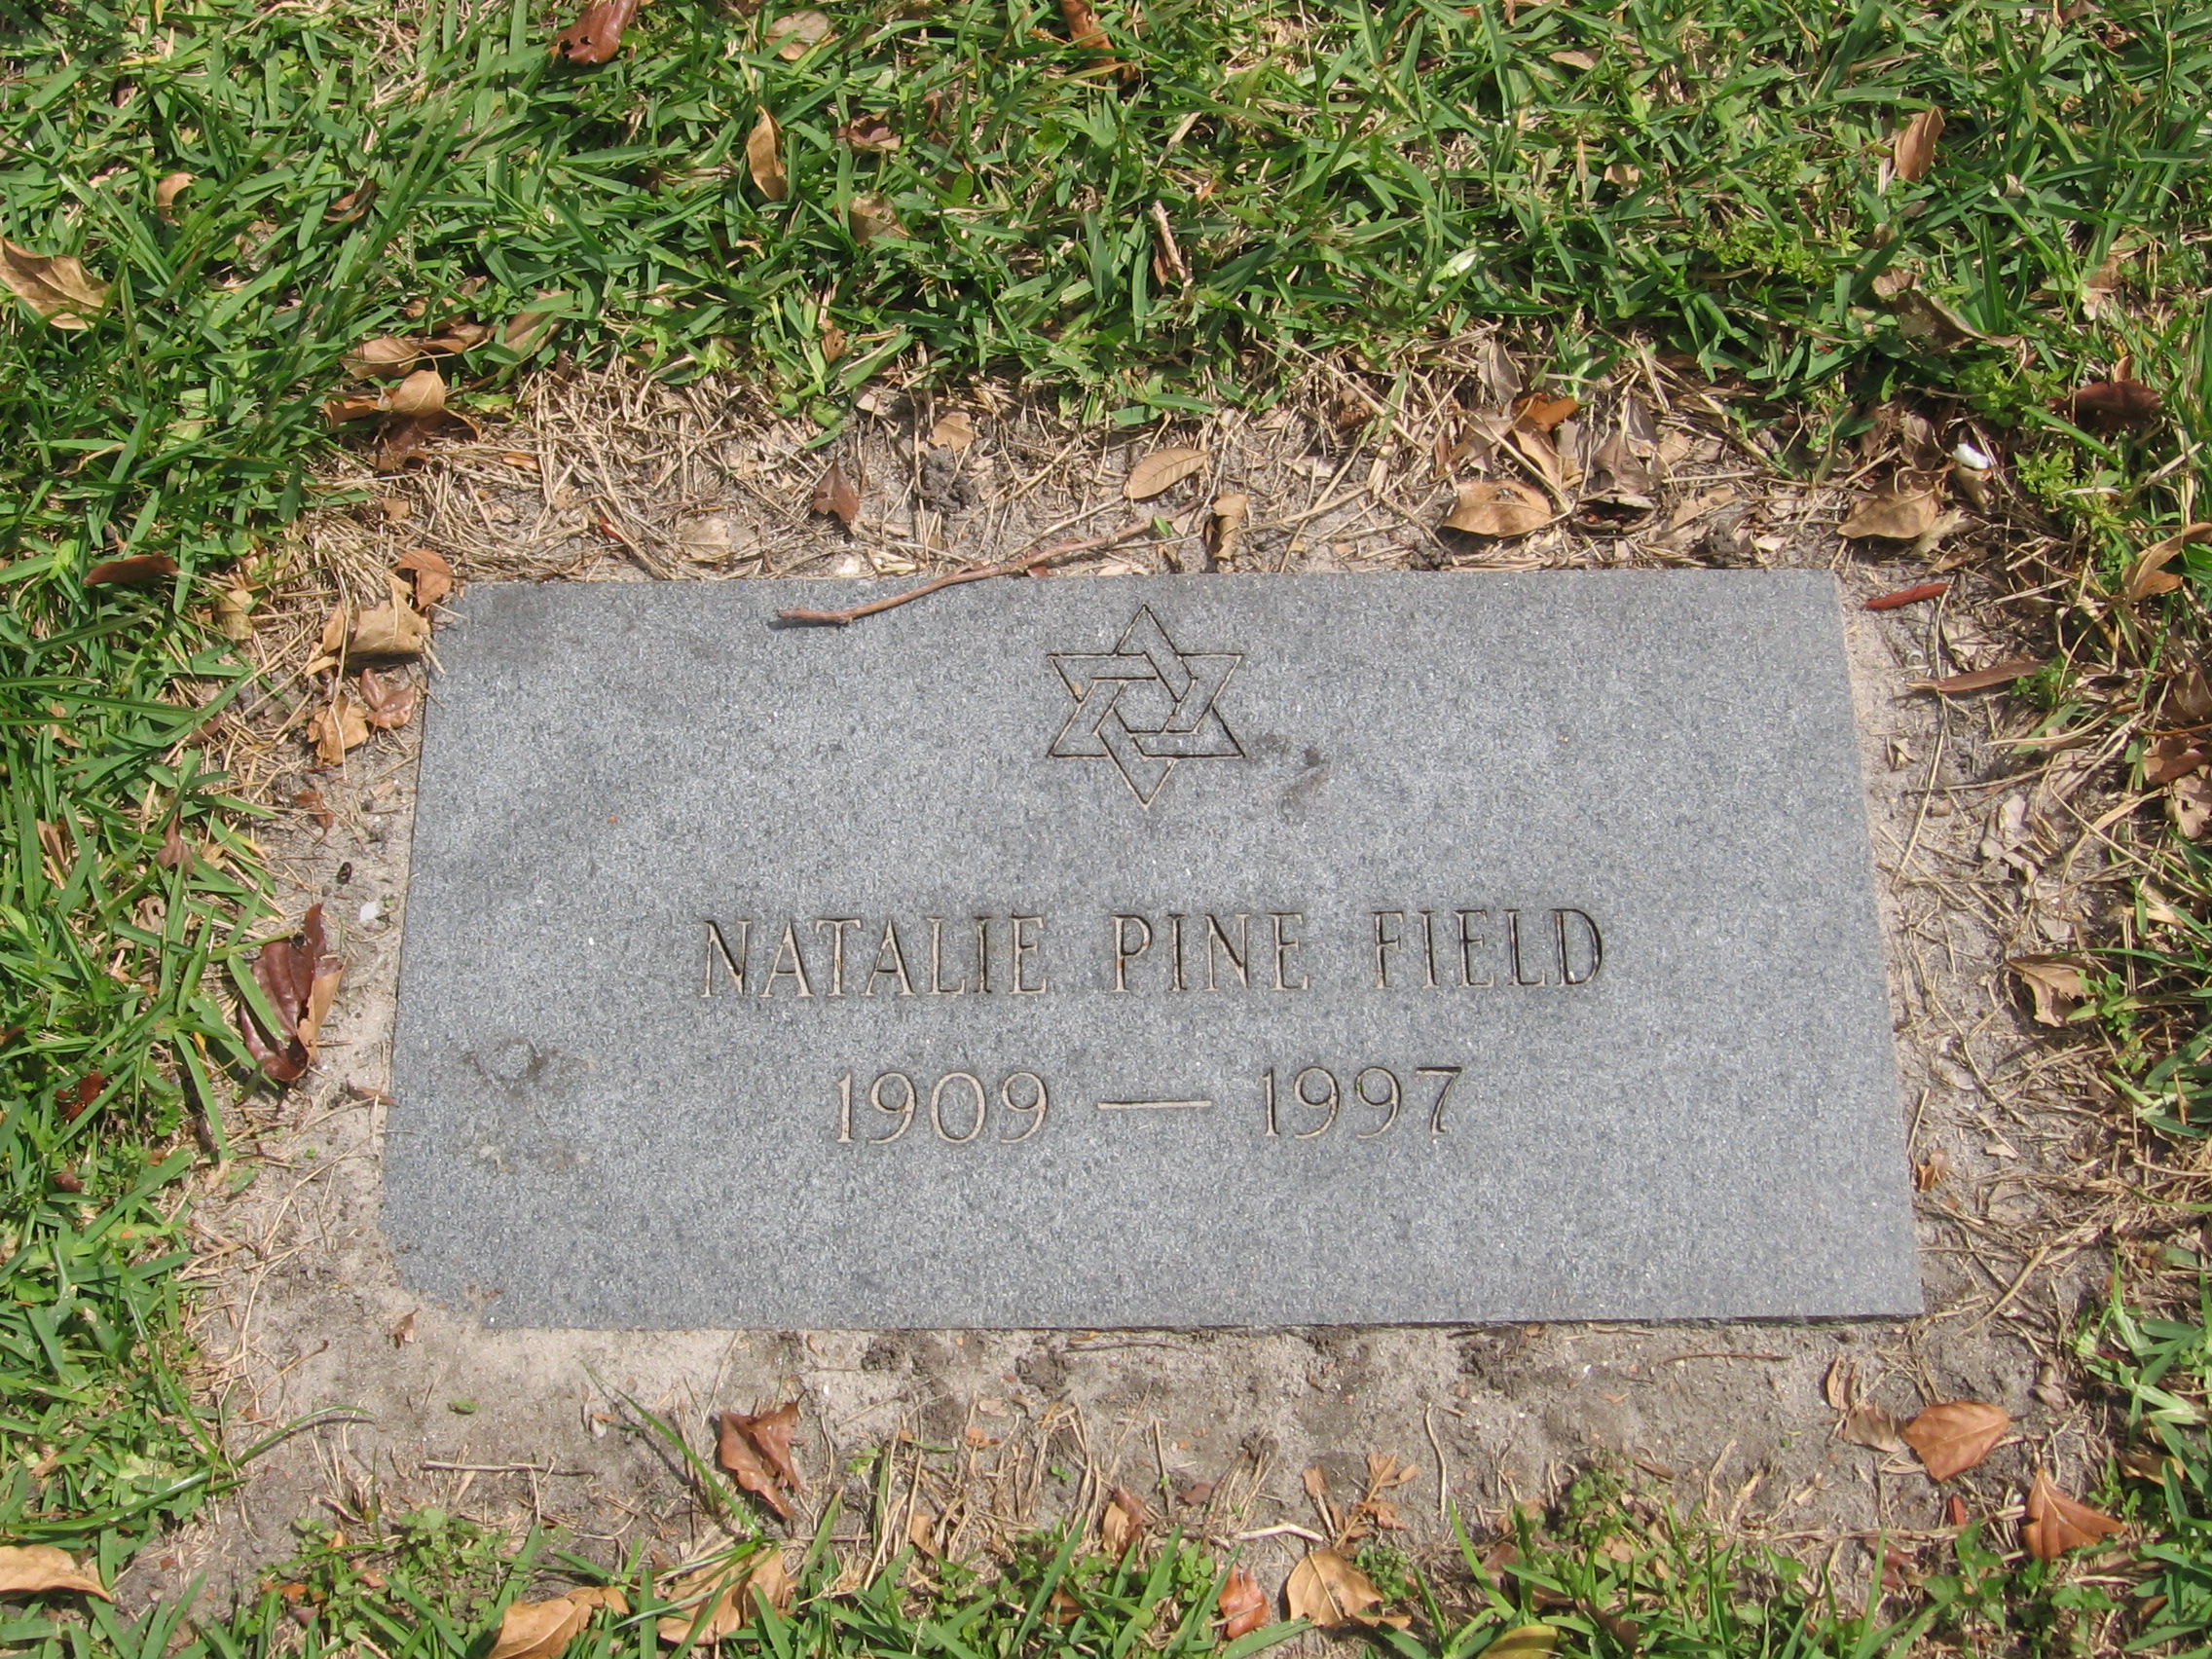 Natalie Pine Field